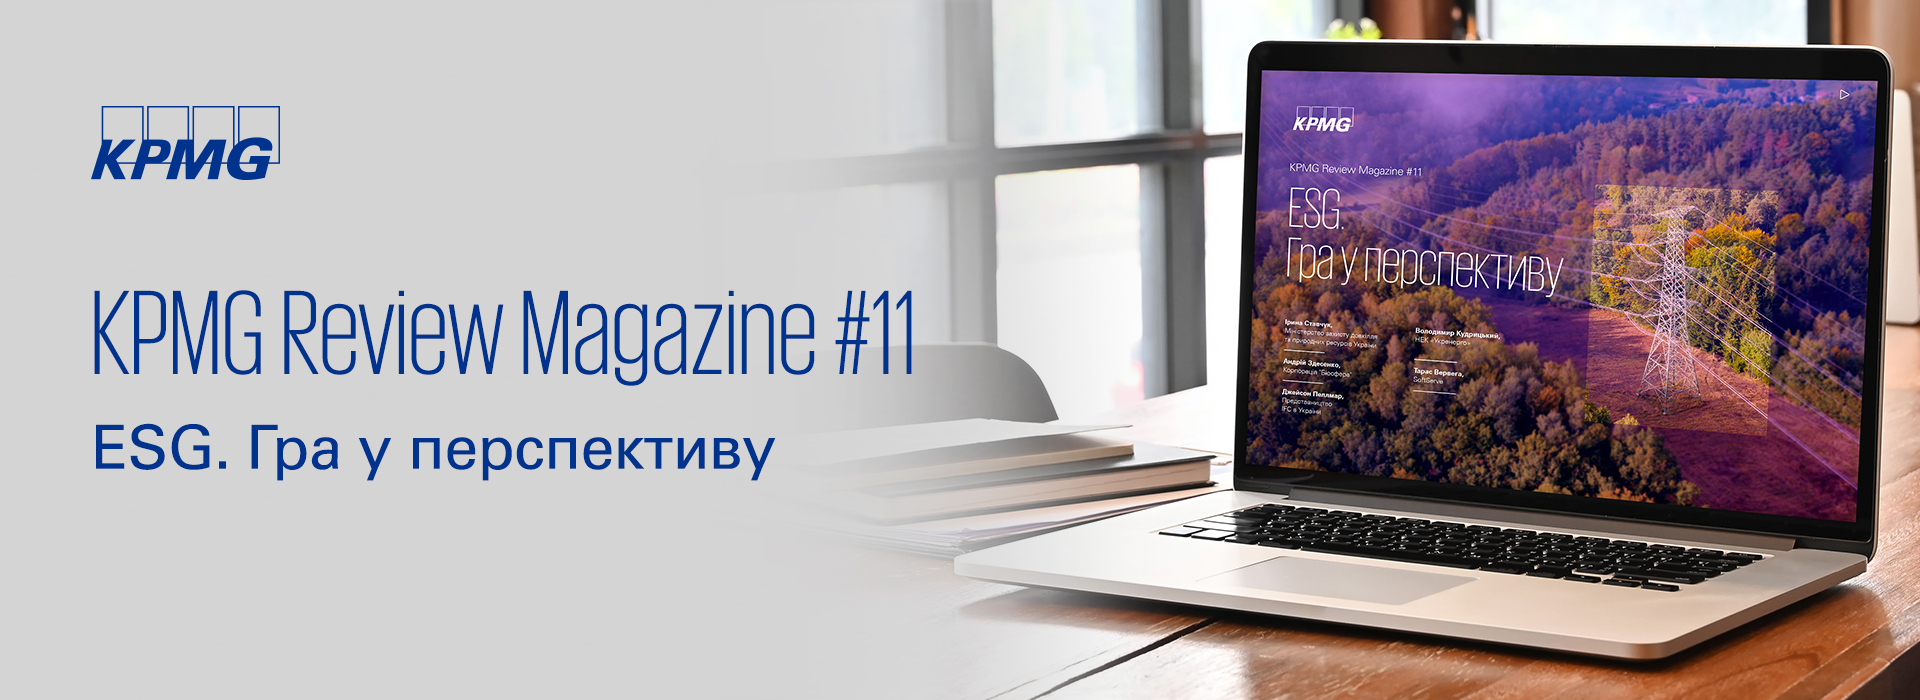 KPMG в Україні представляє одинадцятий випуск журналу KPMG Review Magazine «ESG. Гра у перспективу»